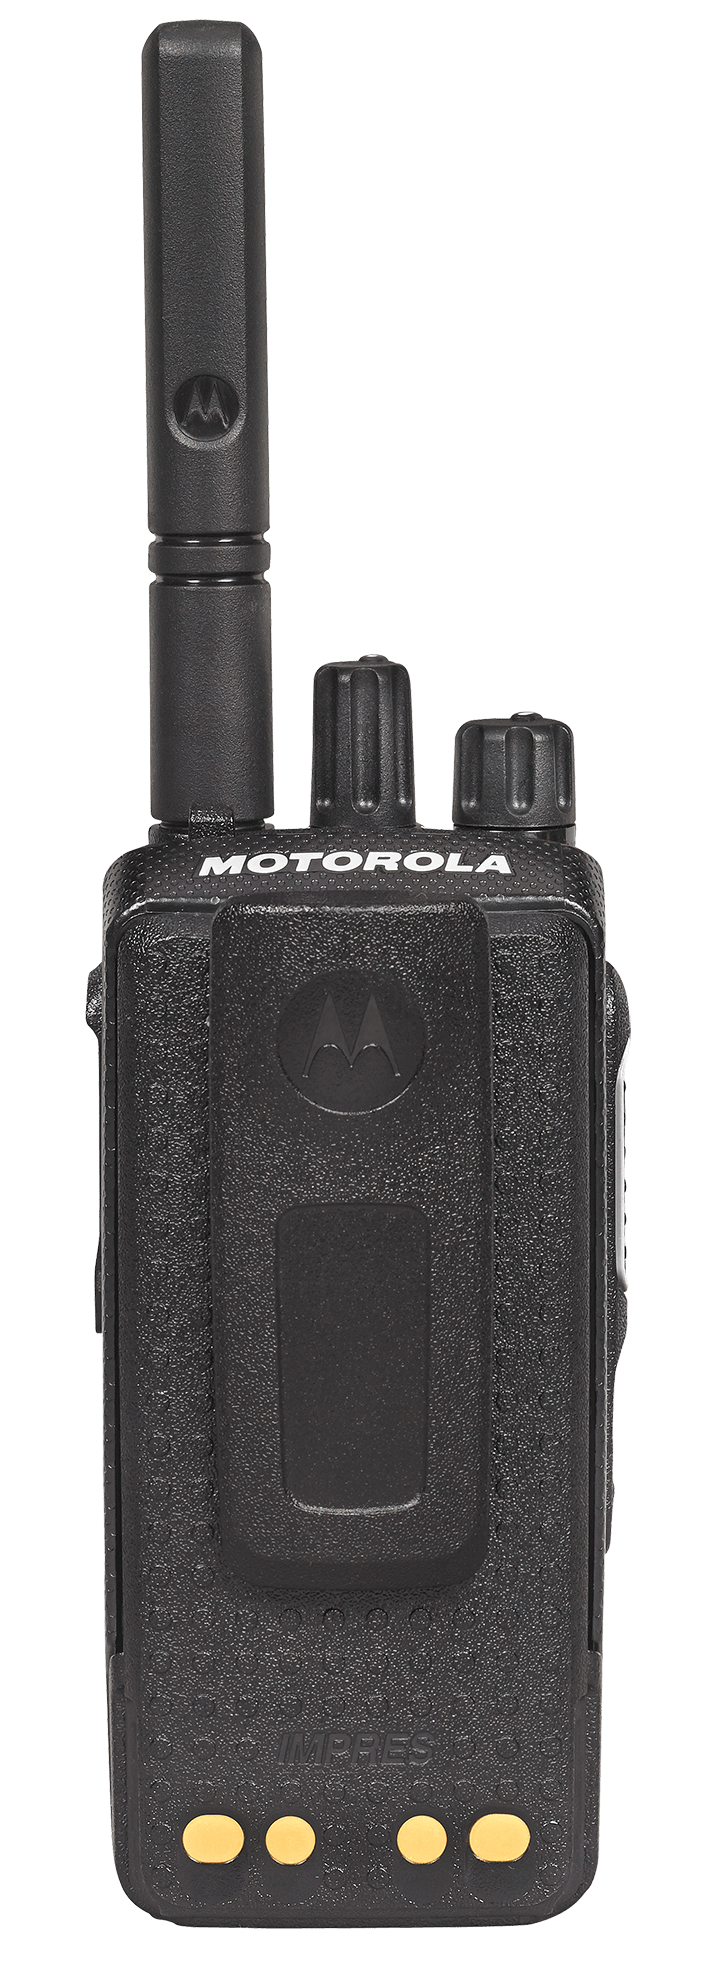 Портативная DMR радиостанция Motorola DP2400e